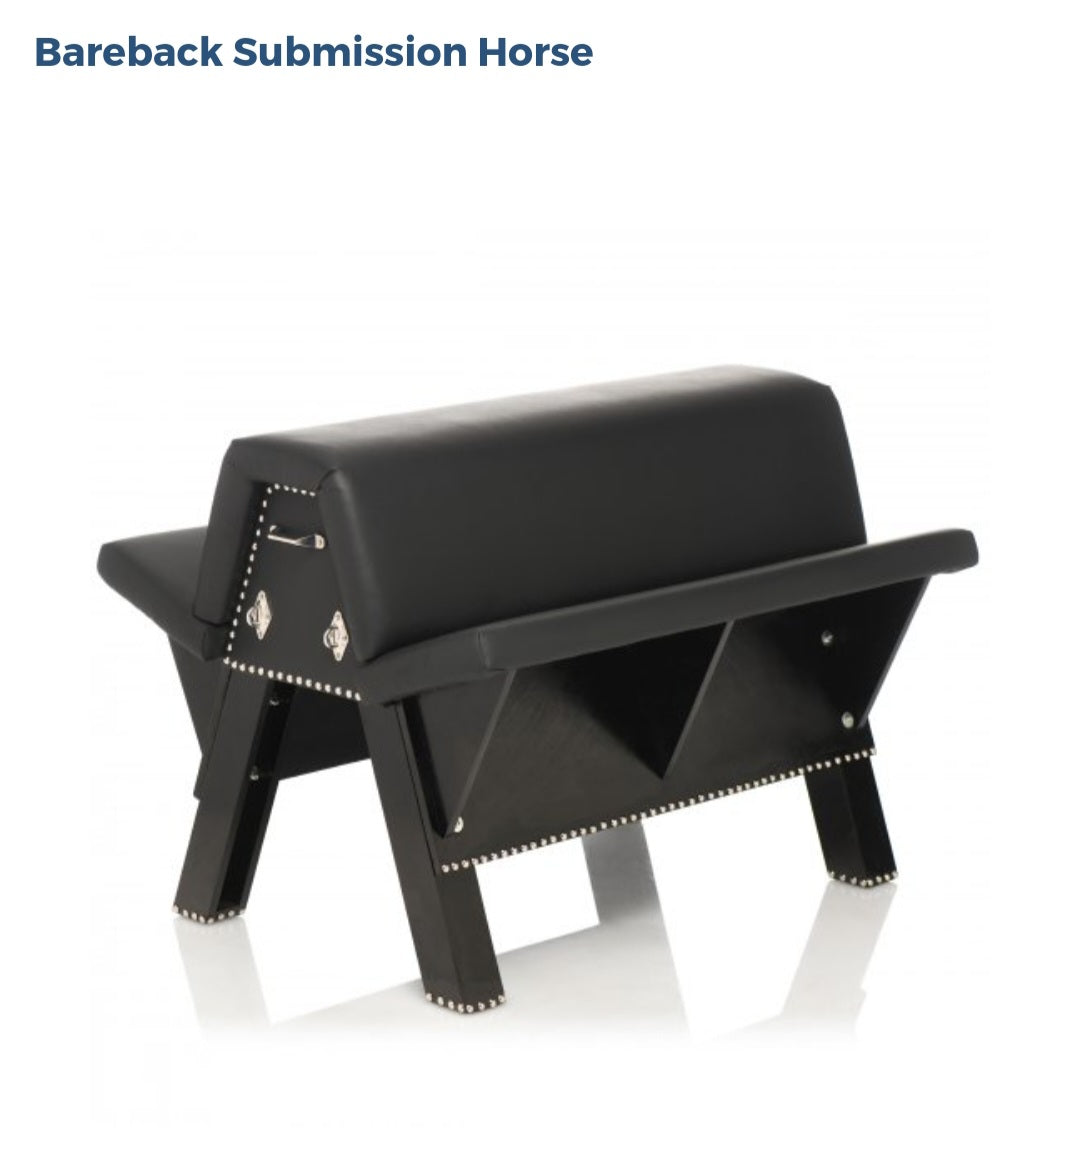 Bareback Submission Horse